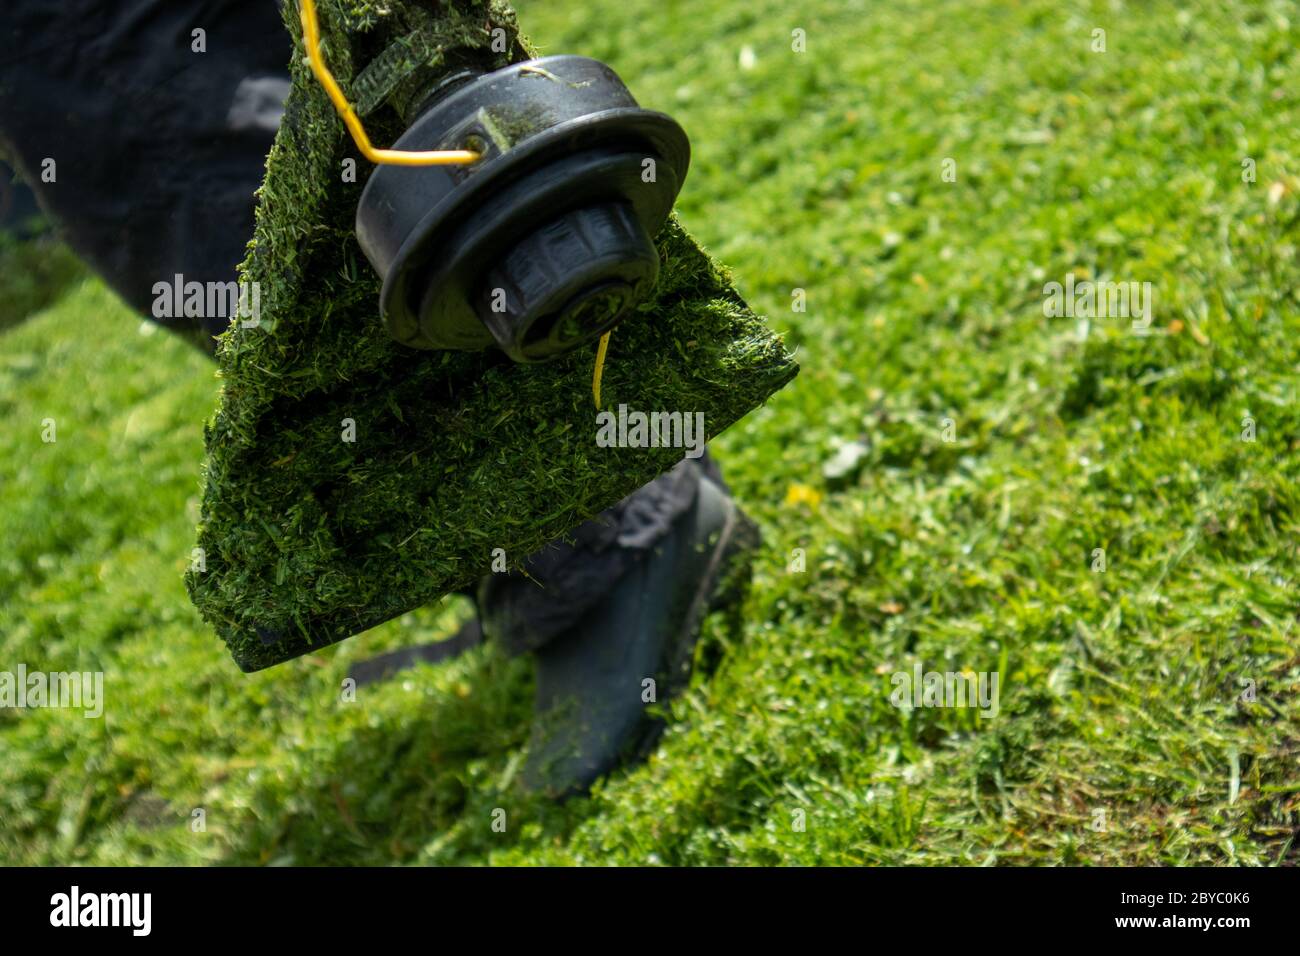 Coupe-herbe de jardin de près, vue de dessous sur une tête mobile. Banque D'Images